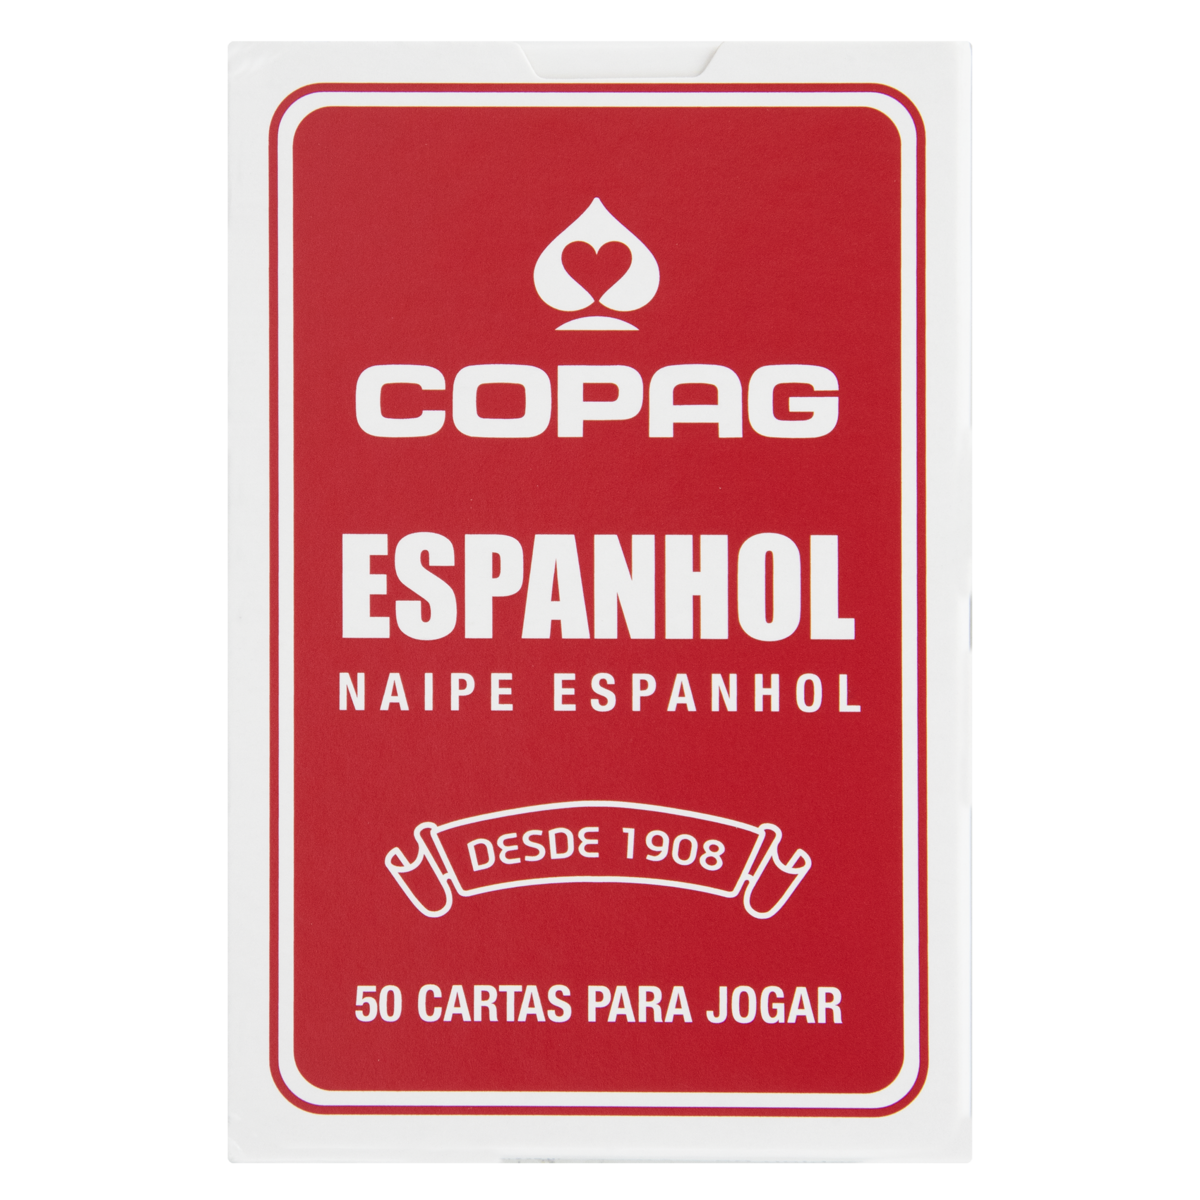 7896008921910 - JOGO DE CARTAS VERMELHAS ESPANHOL COPAG CAIXA 50 CARTAS